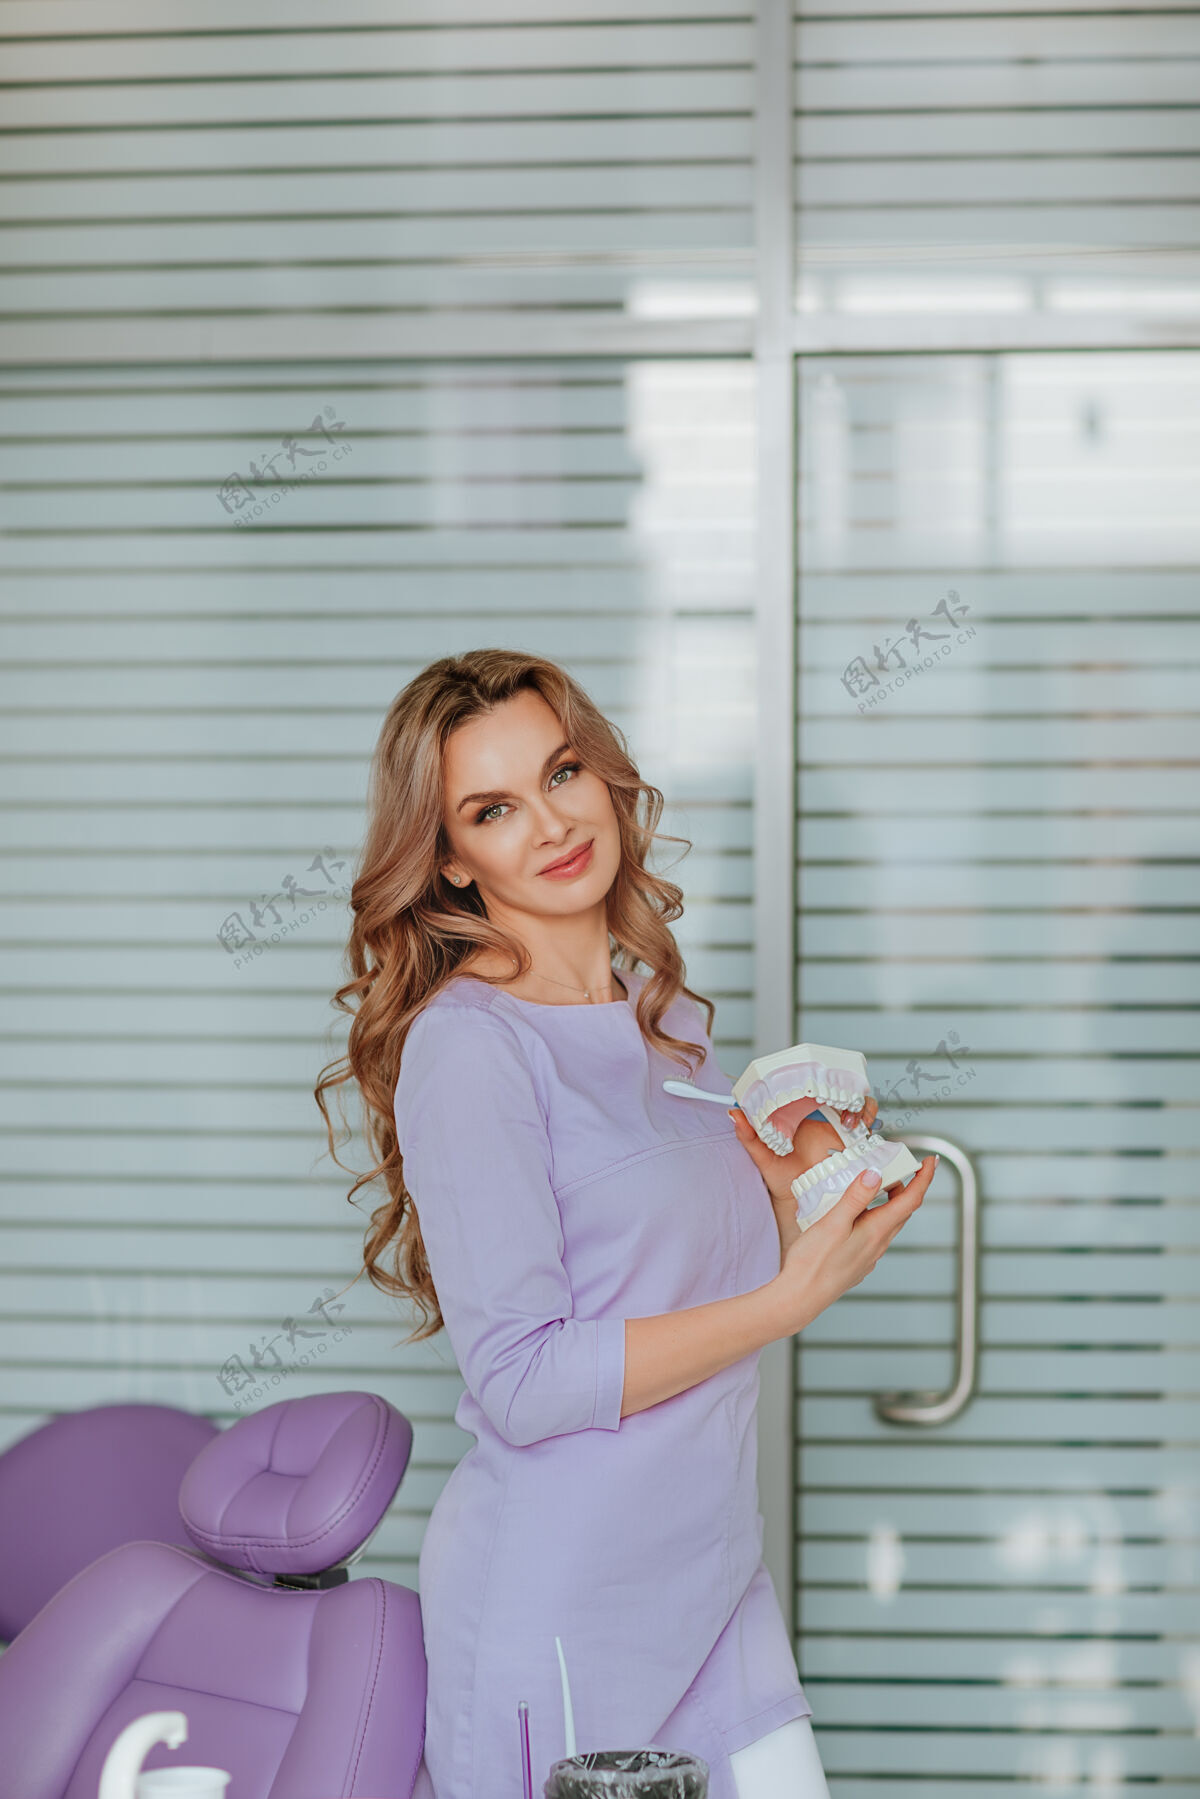 过程年轻迷人的牙科医生的肖像 长卷发 穿着紫色的医疗制服 在橱柜里摆着塑料嘴工具室内医疗